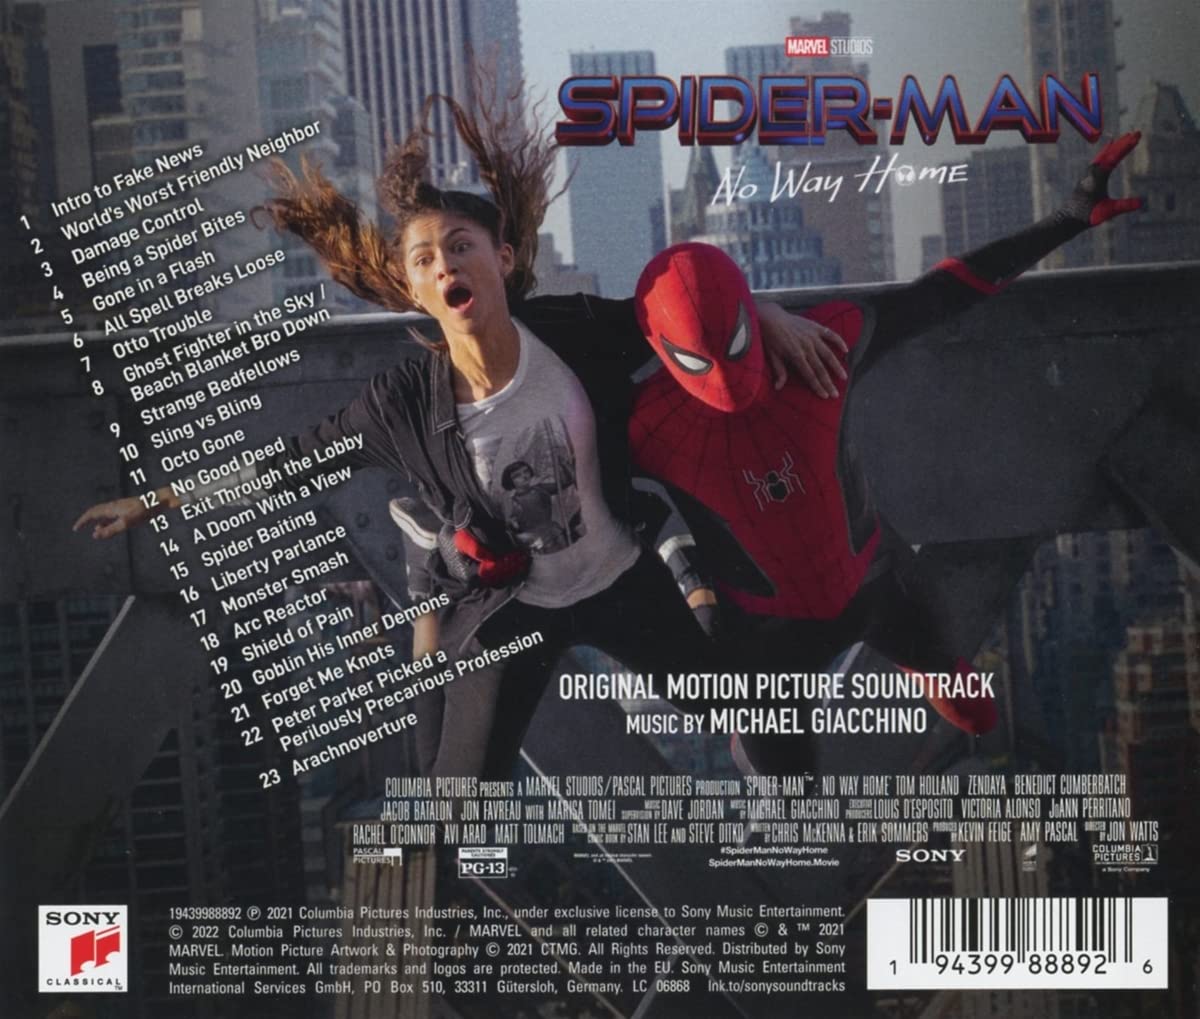 스파이더맨: 노 웨이 홈 영화음악 (Spider-Man: No Way Home OST by Michael Giacchino)